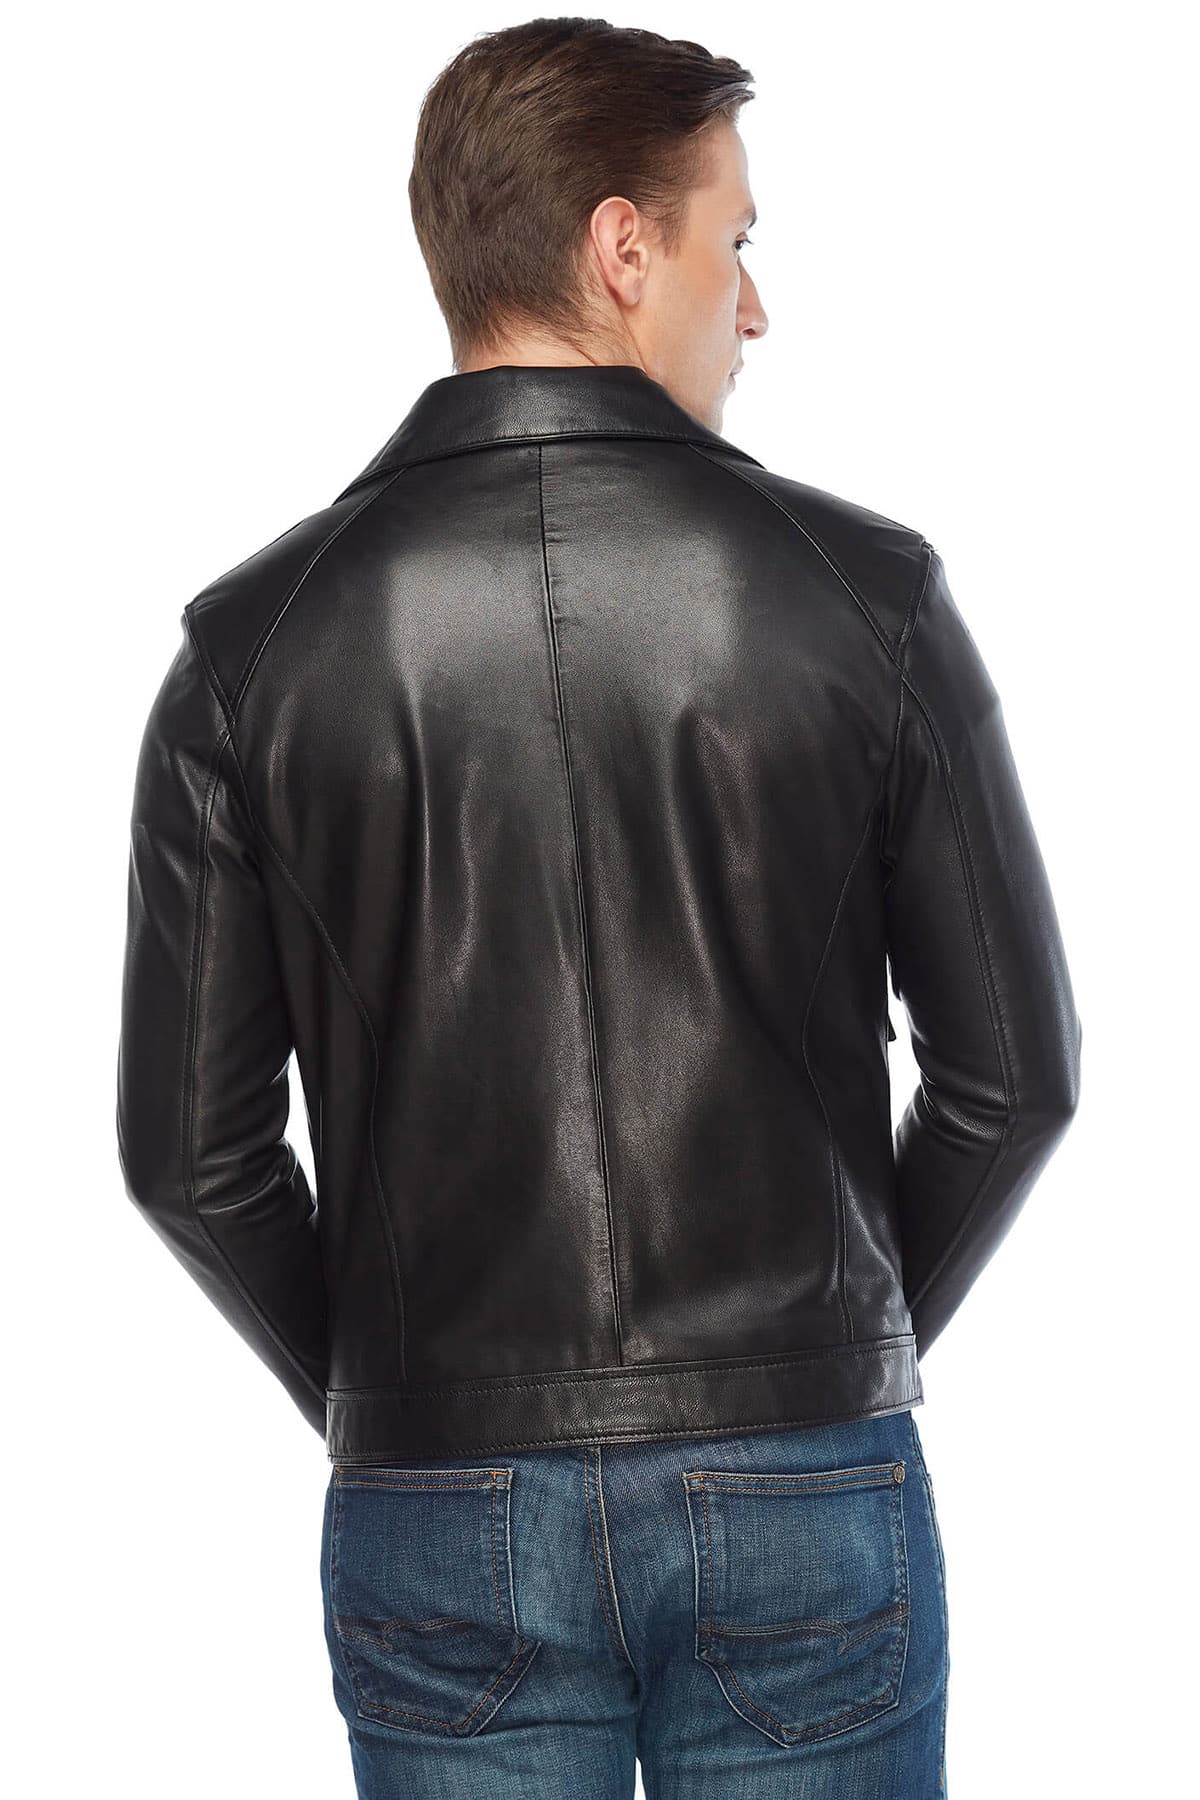 Orlando Bloom Men's 100 % Real Black Leather Jacket